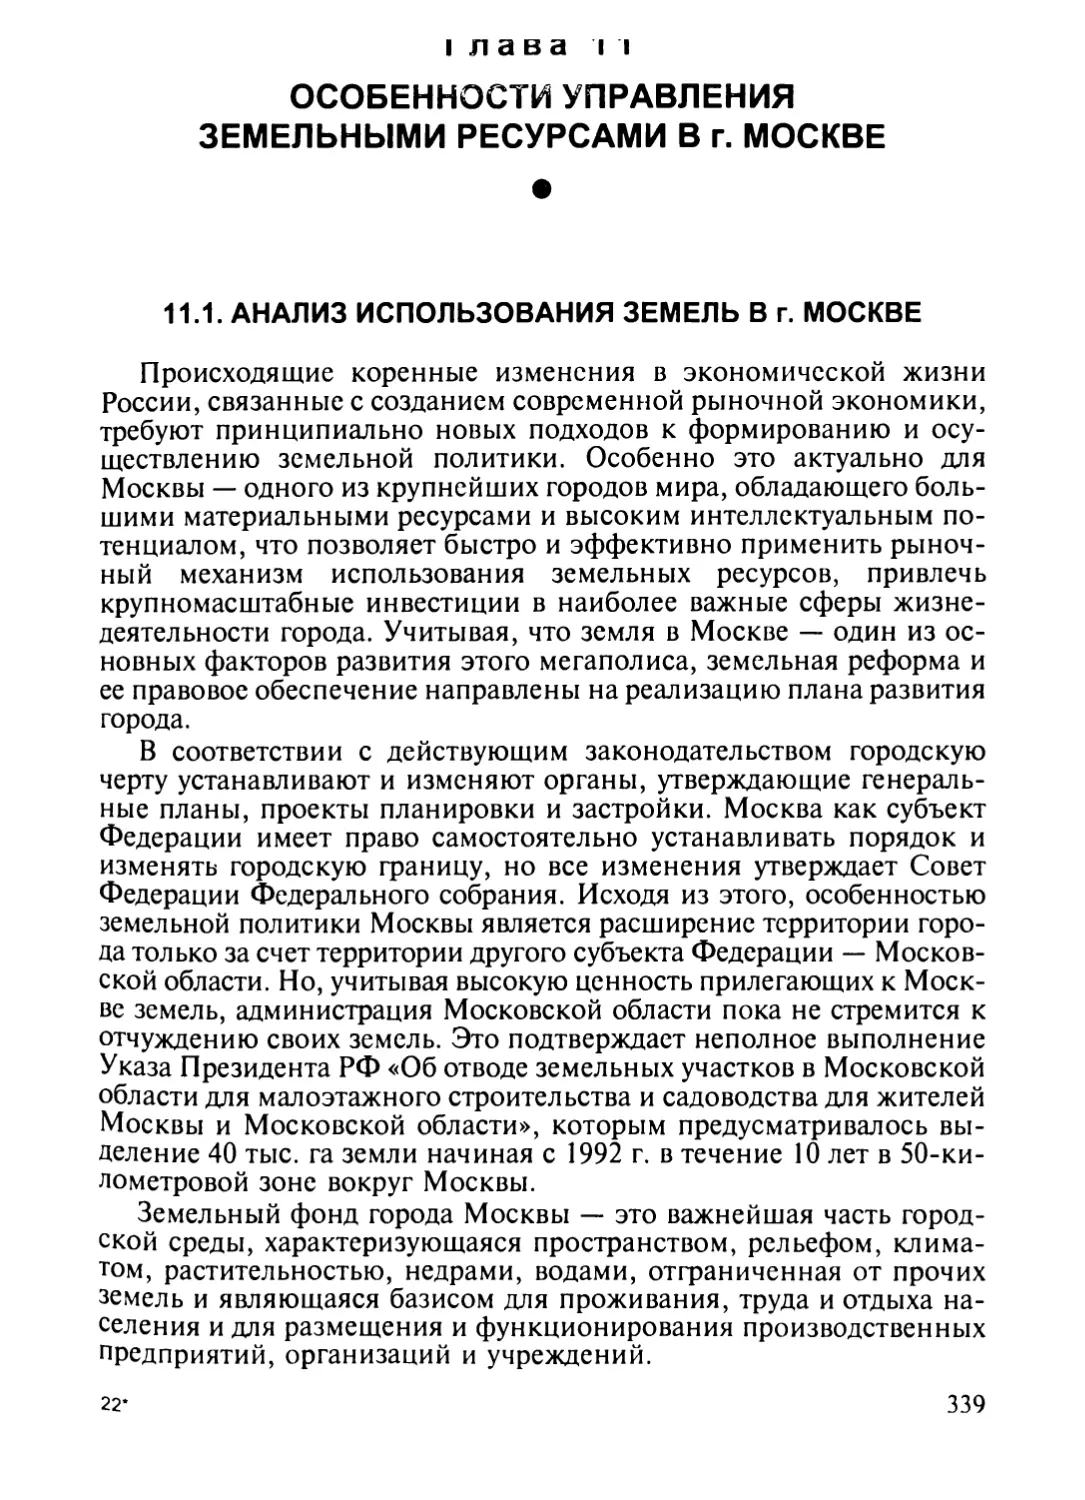 Глава 11. Особенности управления земельными ресурсами в г. Москве